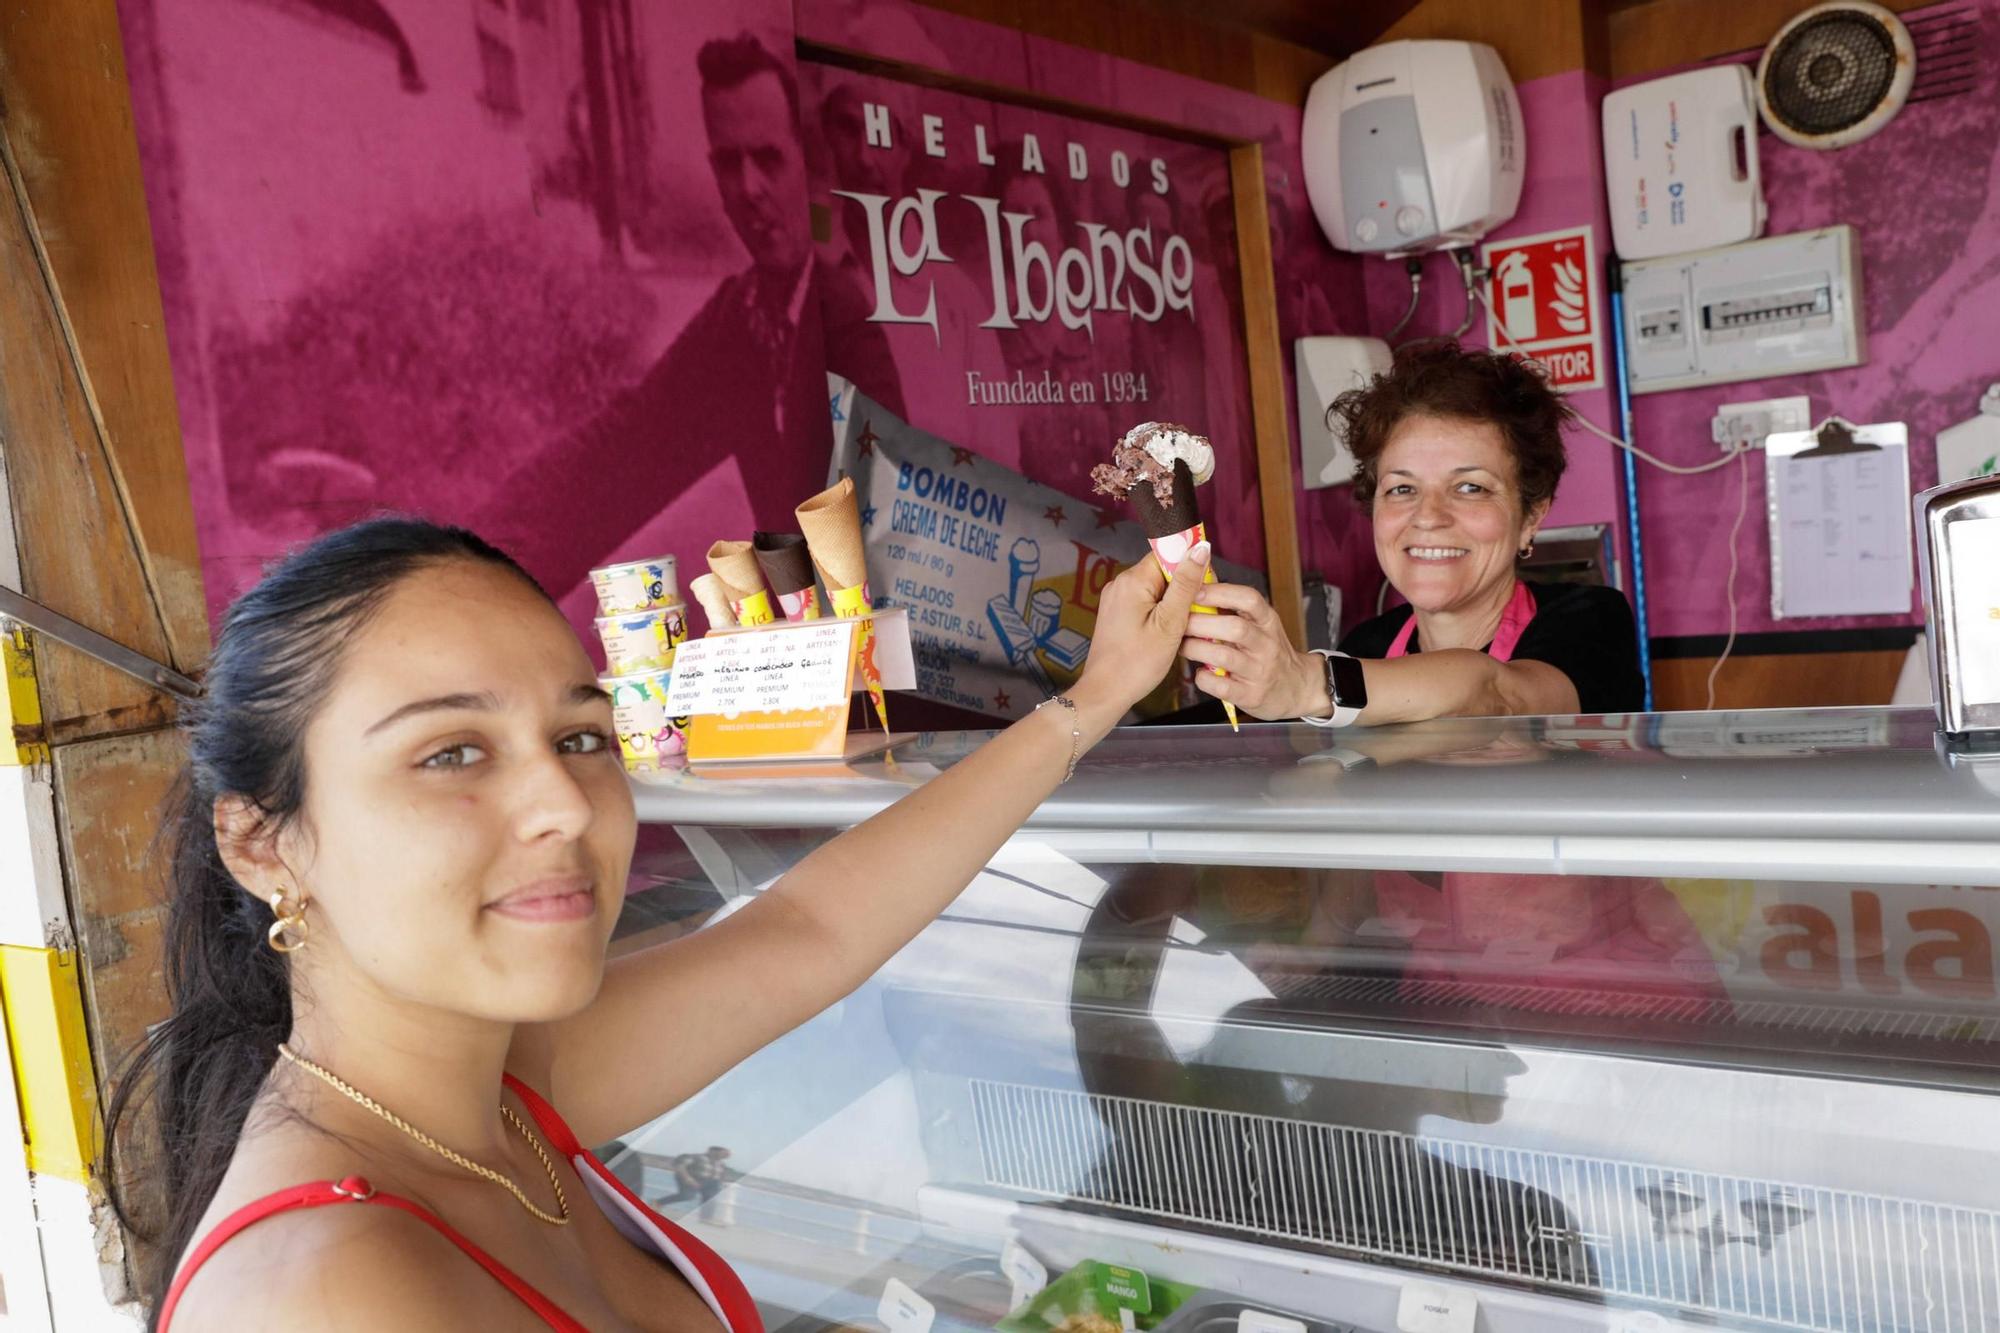 El verano en Gijón llega con sabor a Oreo y pistacho (en imágenes)